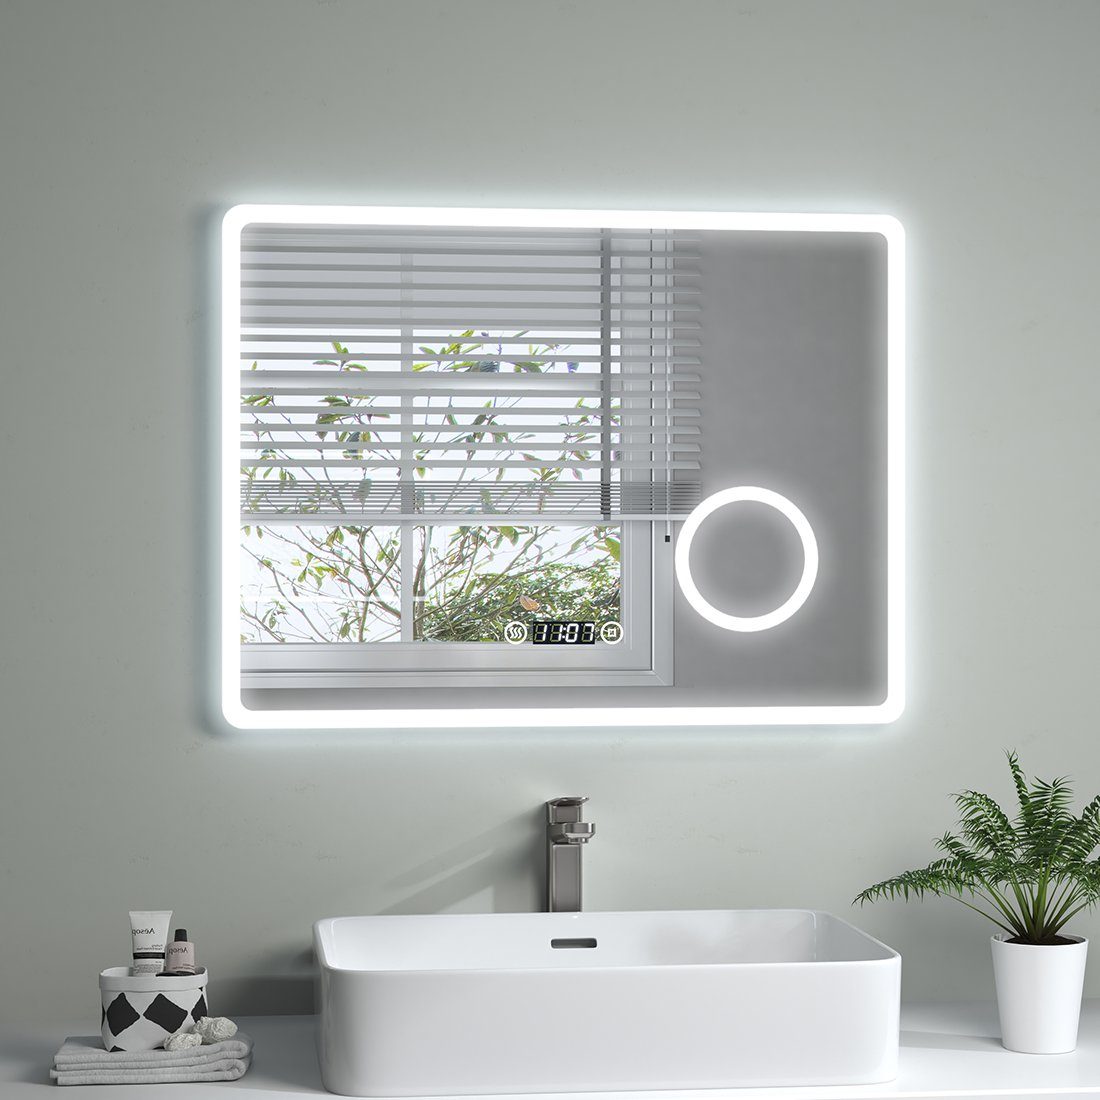 S'AFIELINA Badspiegel LED Badspiegel mit Beleuchtung Schminkspiegel Wandspiegel, Touchschalter,Uhr,Beschlagfrei,3-fach Vergrößerung,IP 54